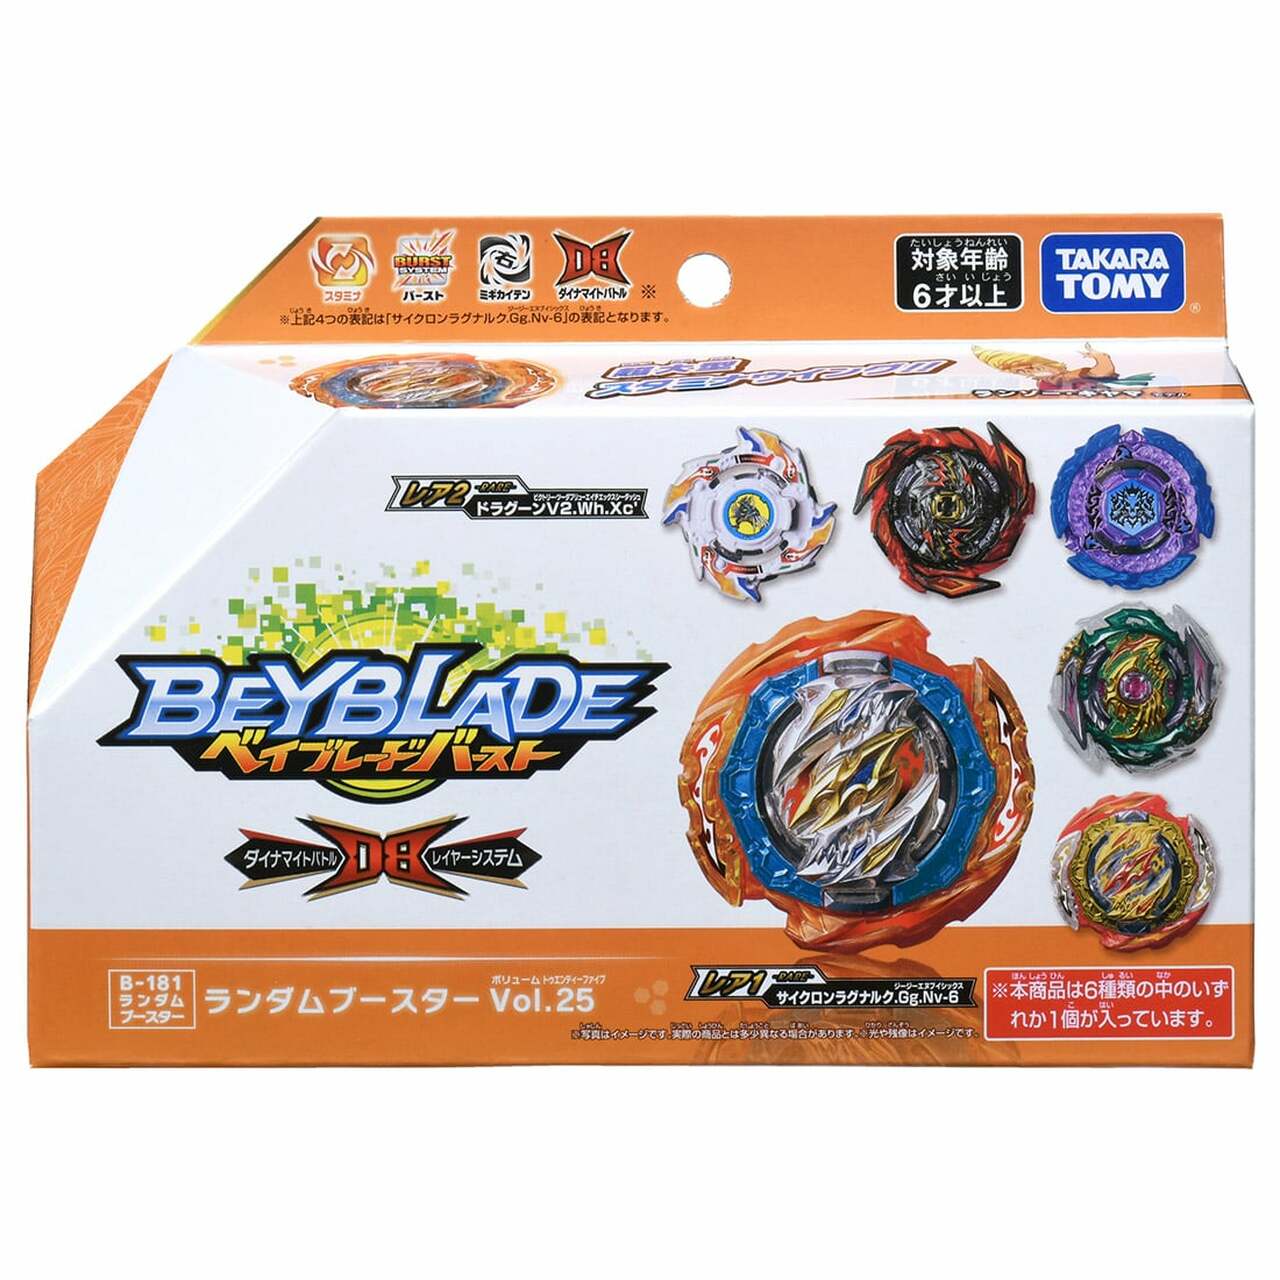 Beyblade BURST Dynamite Battle B-181 Random Booster Vol. 25 Full Set (Pack of 6 Models) Booster Full Set Takara Tomy